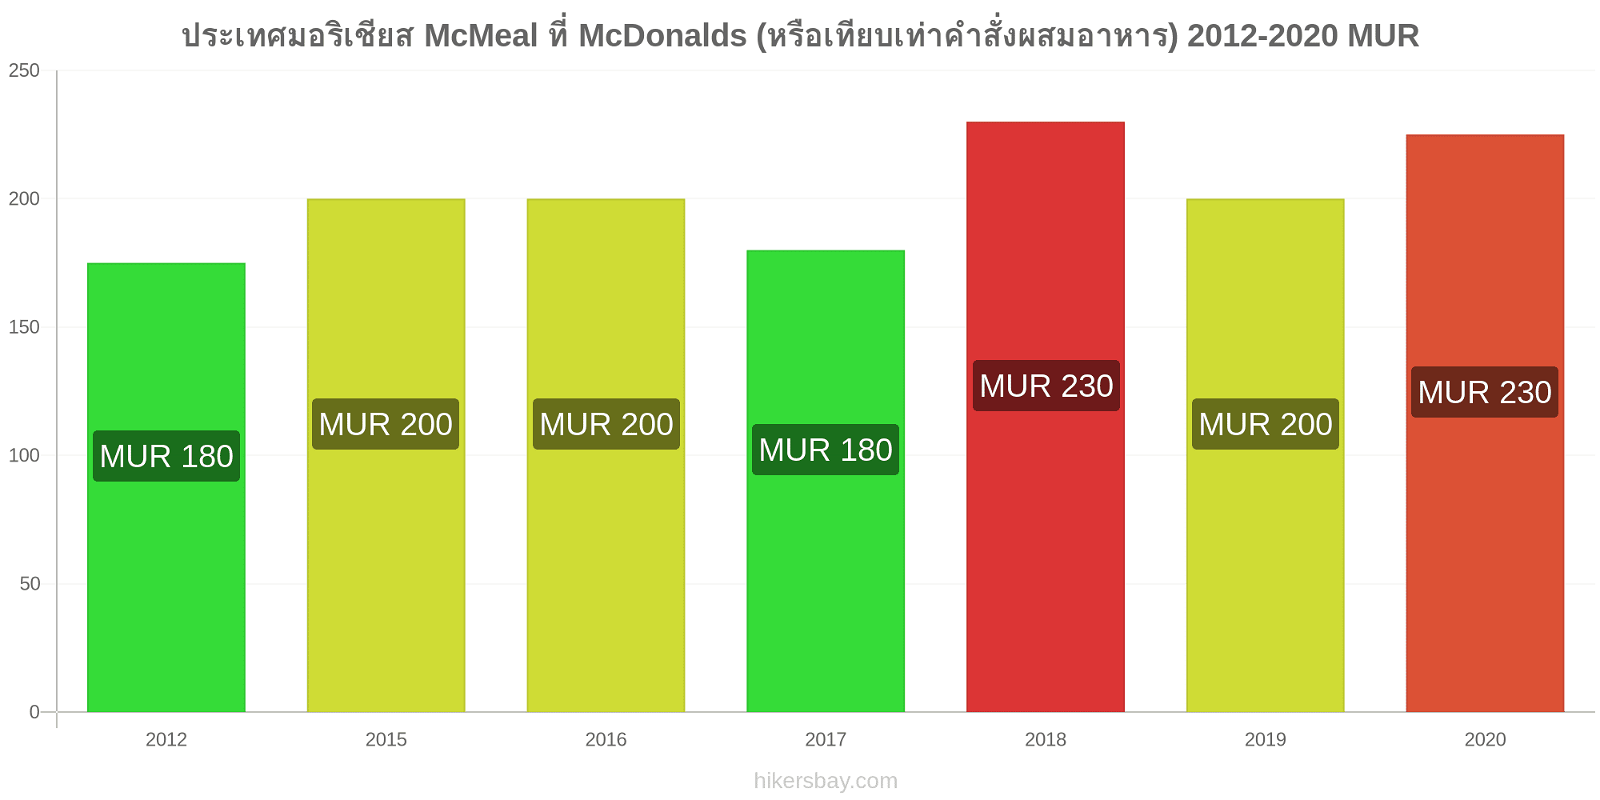 ประเทศมอริเชียส การเปลี่ยนแปลงราคา McMeal ที่ McDonalds (หรือเทียบเท่าคำสั่งผสมอาหาร) hikersbay.com